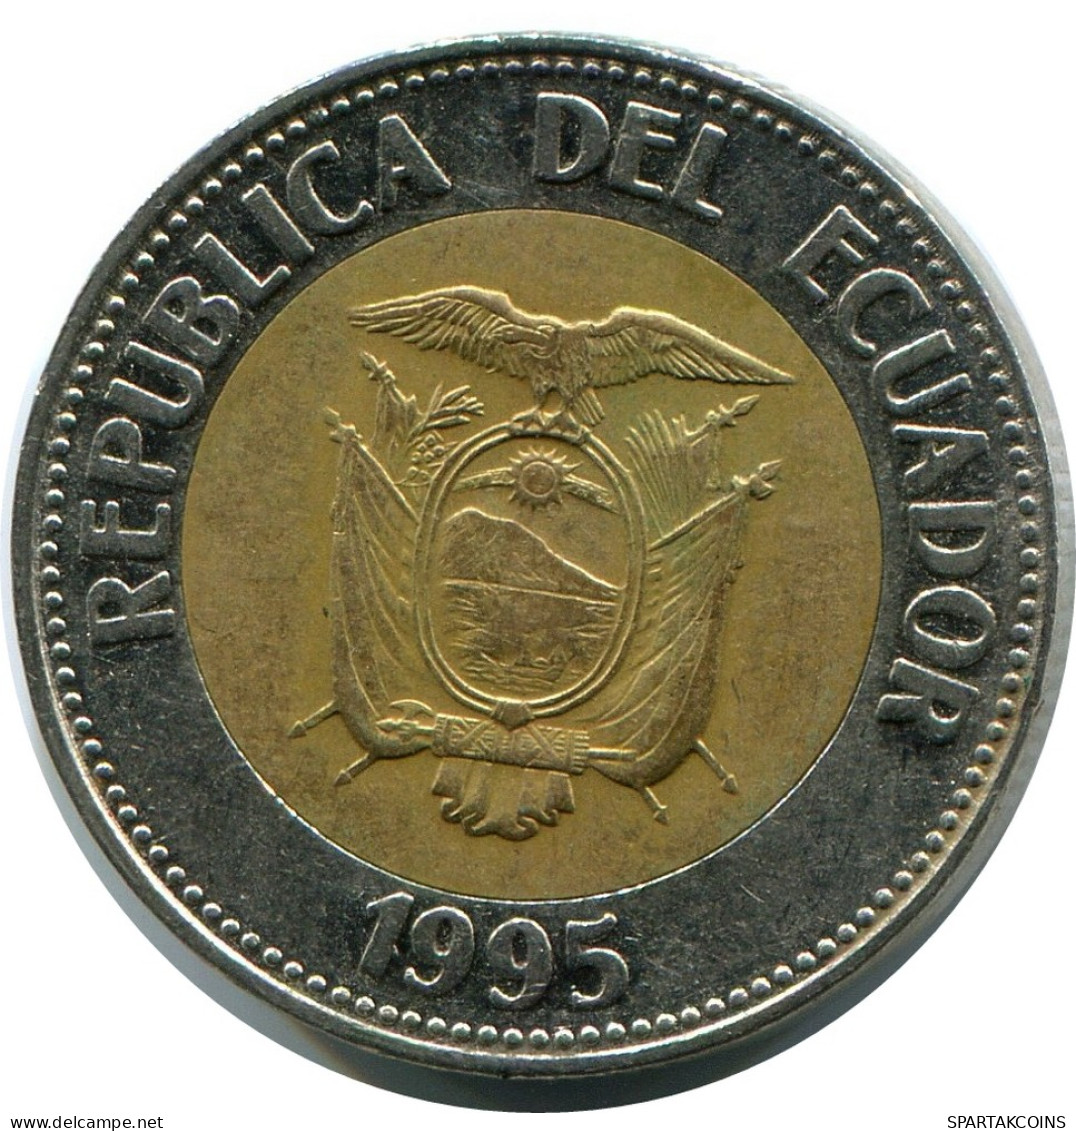 100 SUCRES 1995 ECUADOR BIMETALLIC Coin #AR946.U - Equateur